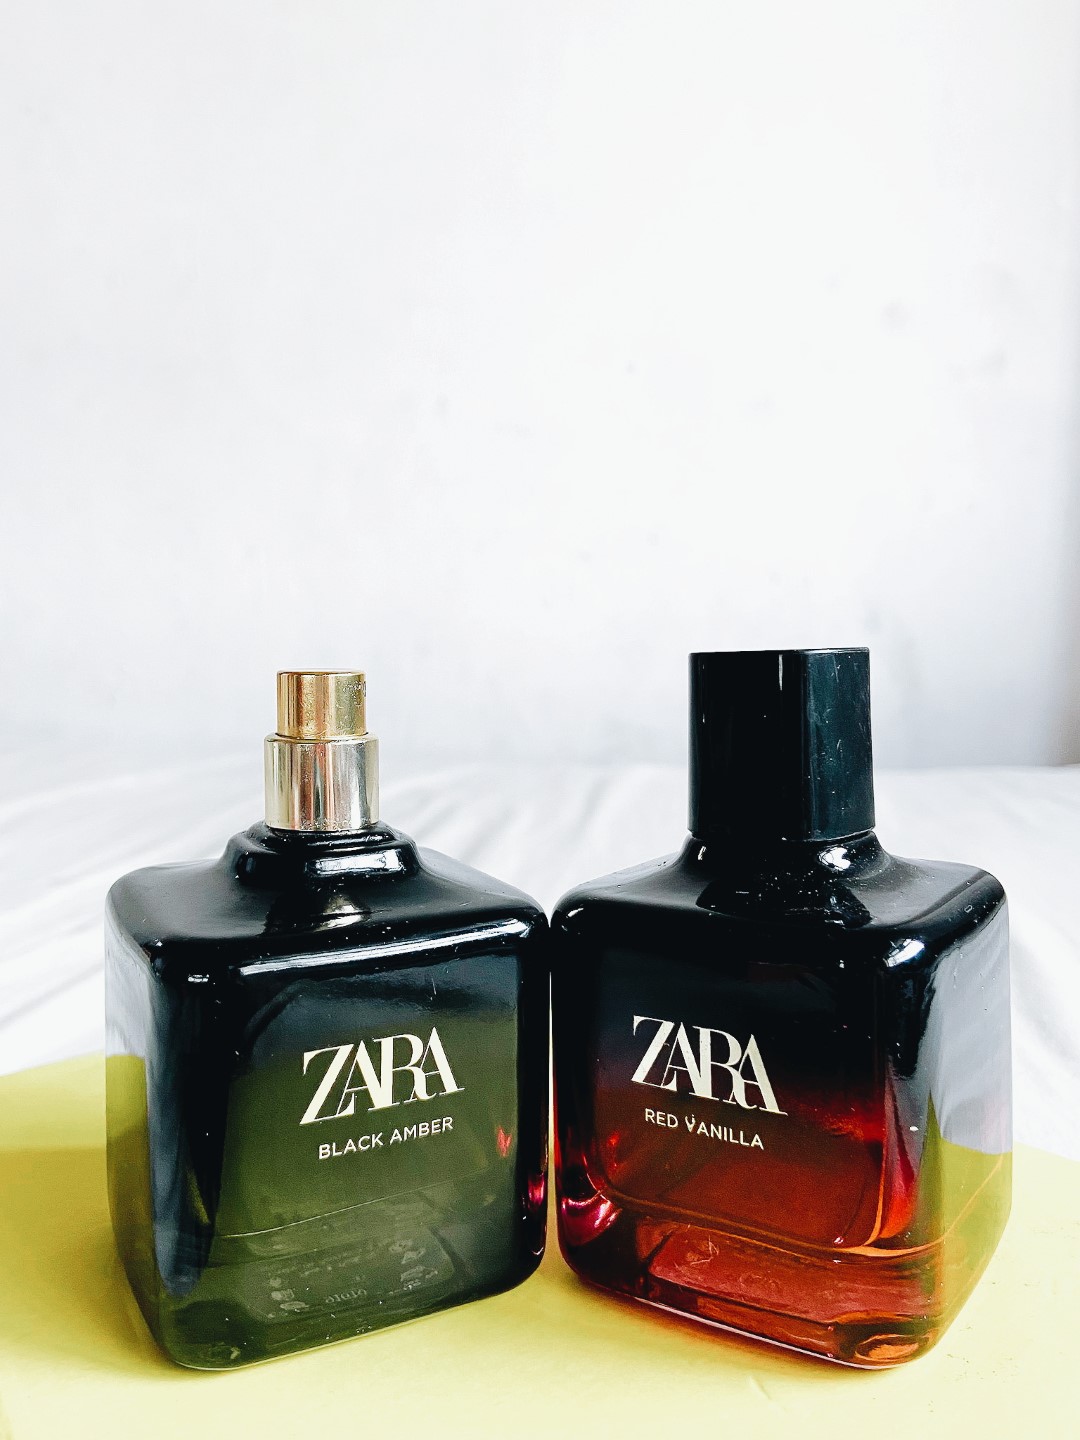 Zara perfumes